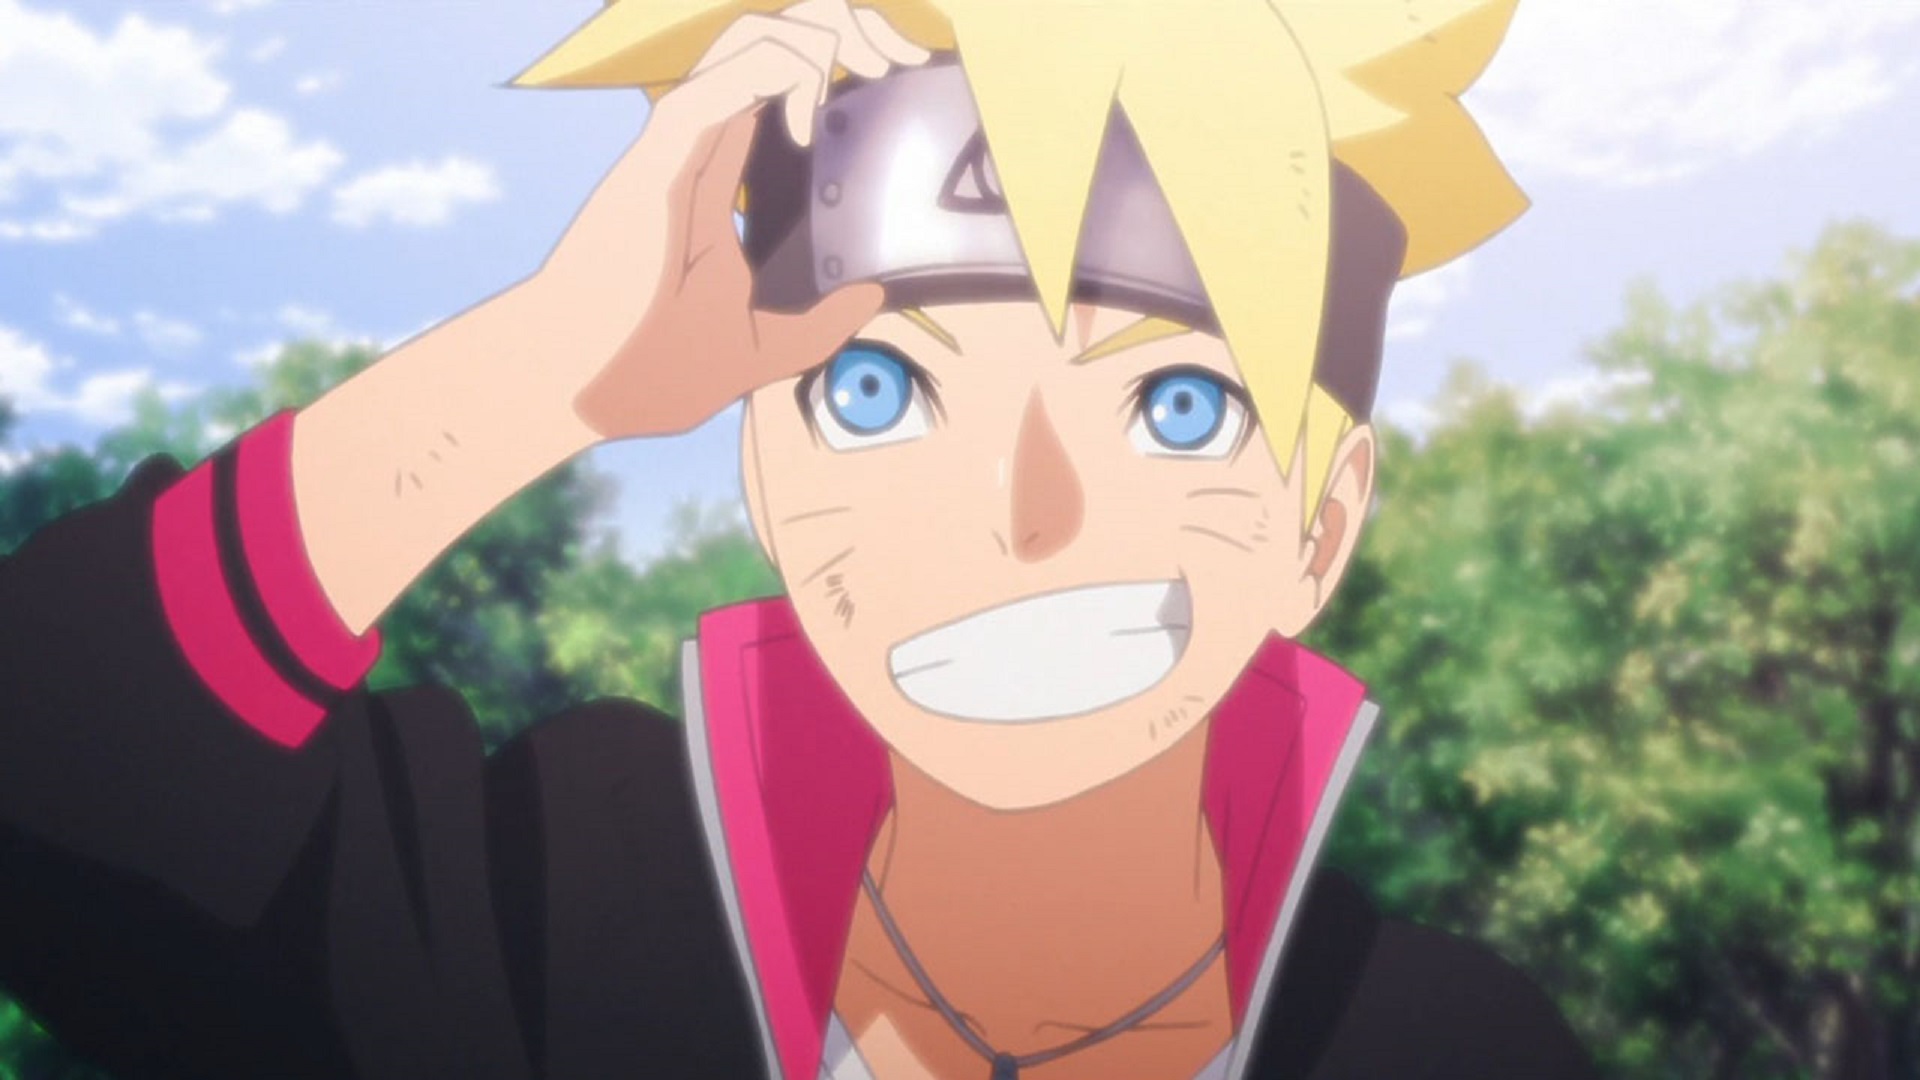 Boruto: Naruto Next Generations é a sequência direta de Naruto Shippuden, tanto no anime quanto no mangá. Nesta nova história, acompanhamos Boruto, filho de Naruto. Juntamente com seus colegas de Time 7, eles vivem novas aventuras e interagem com antigos e novos personagens da franquia. Apesar do anime ainda estar contando a história de Boruto jovem, ele conta com alguns bons arcos, trazendo Naruto e Sasuke de volta, e histórias onde o jovem é o grande protagonista. O anime pode ser acompanhado na íntegra no Crunchyroll e ganha novos capítulos toda semana. Acesse o site por este link e então ganhe 14 dias de premium gratuitos em uma nova conta.